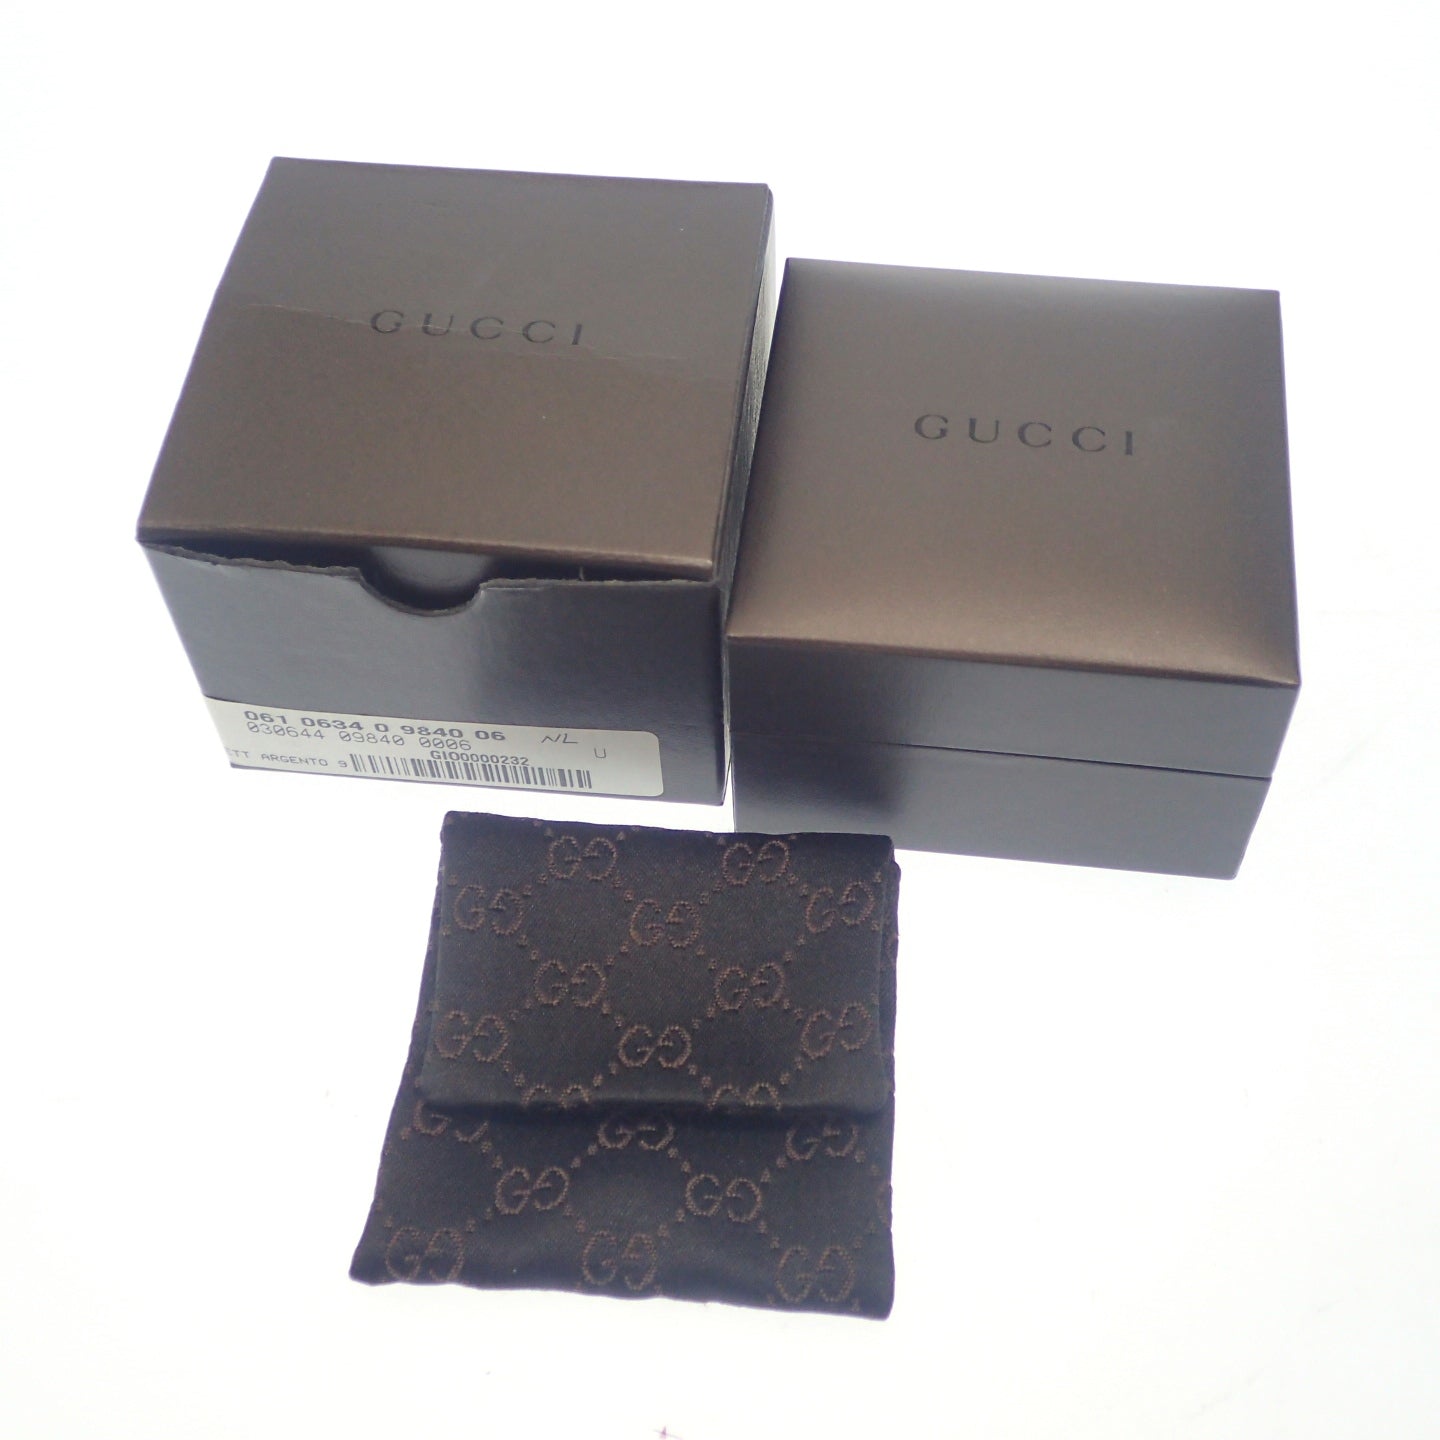 状况良好 ◆ Gucci 链条项链 SV925 银色 带盒 GUCCI [LA] 